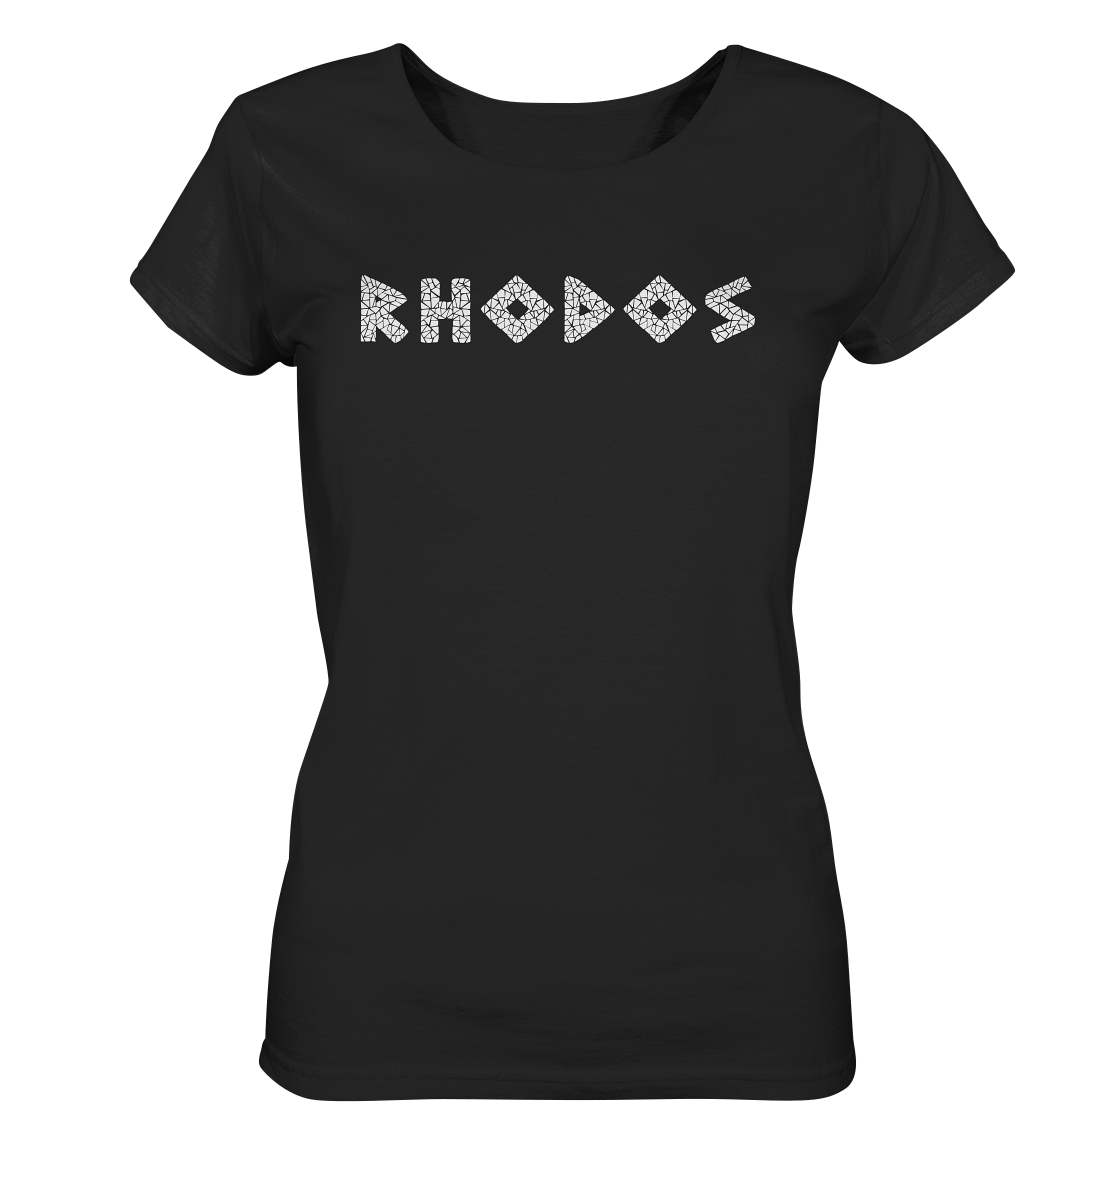 Rhodos Mosaik - Ladies Organic Shirt